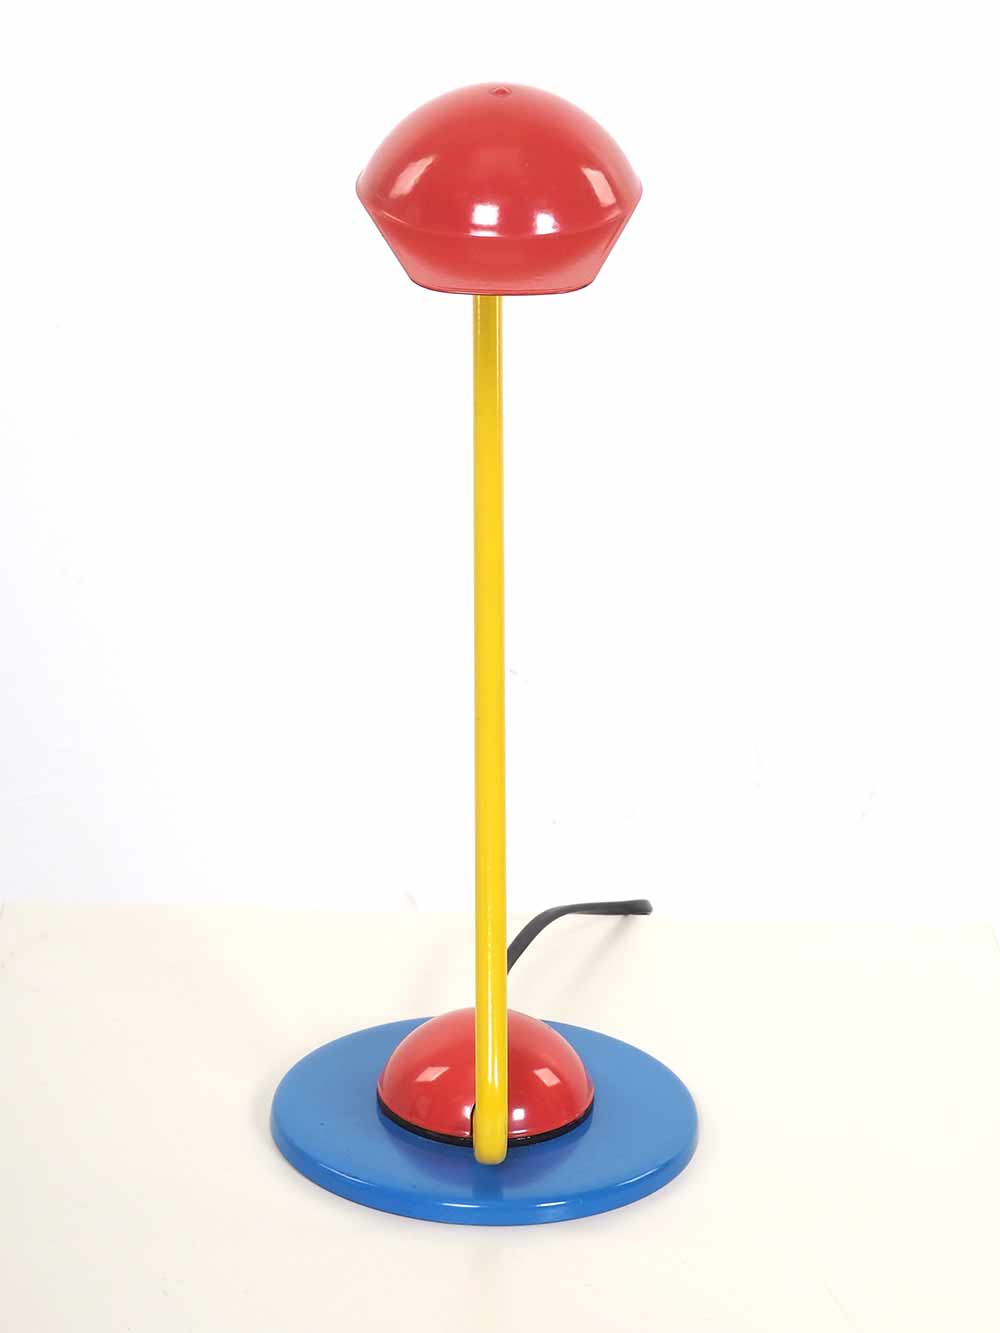 Tafellamp met pet memphis stijl rood geel blauw